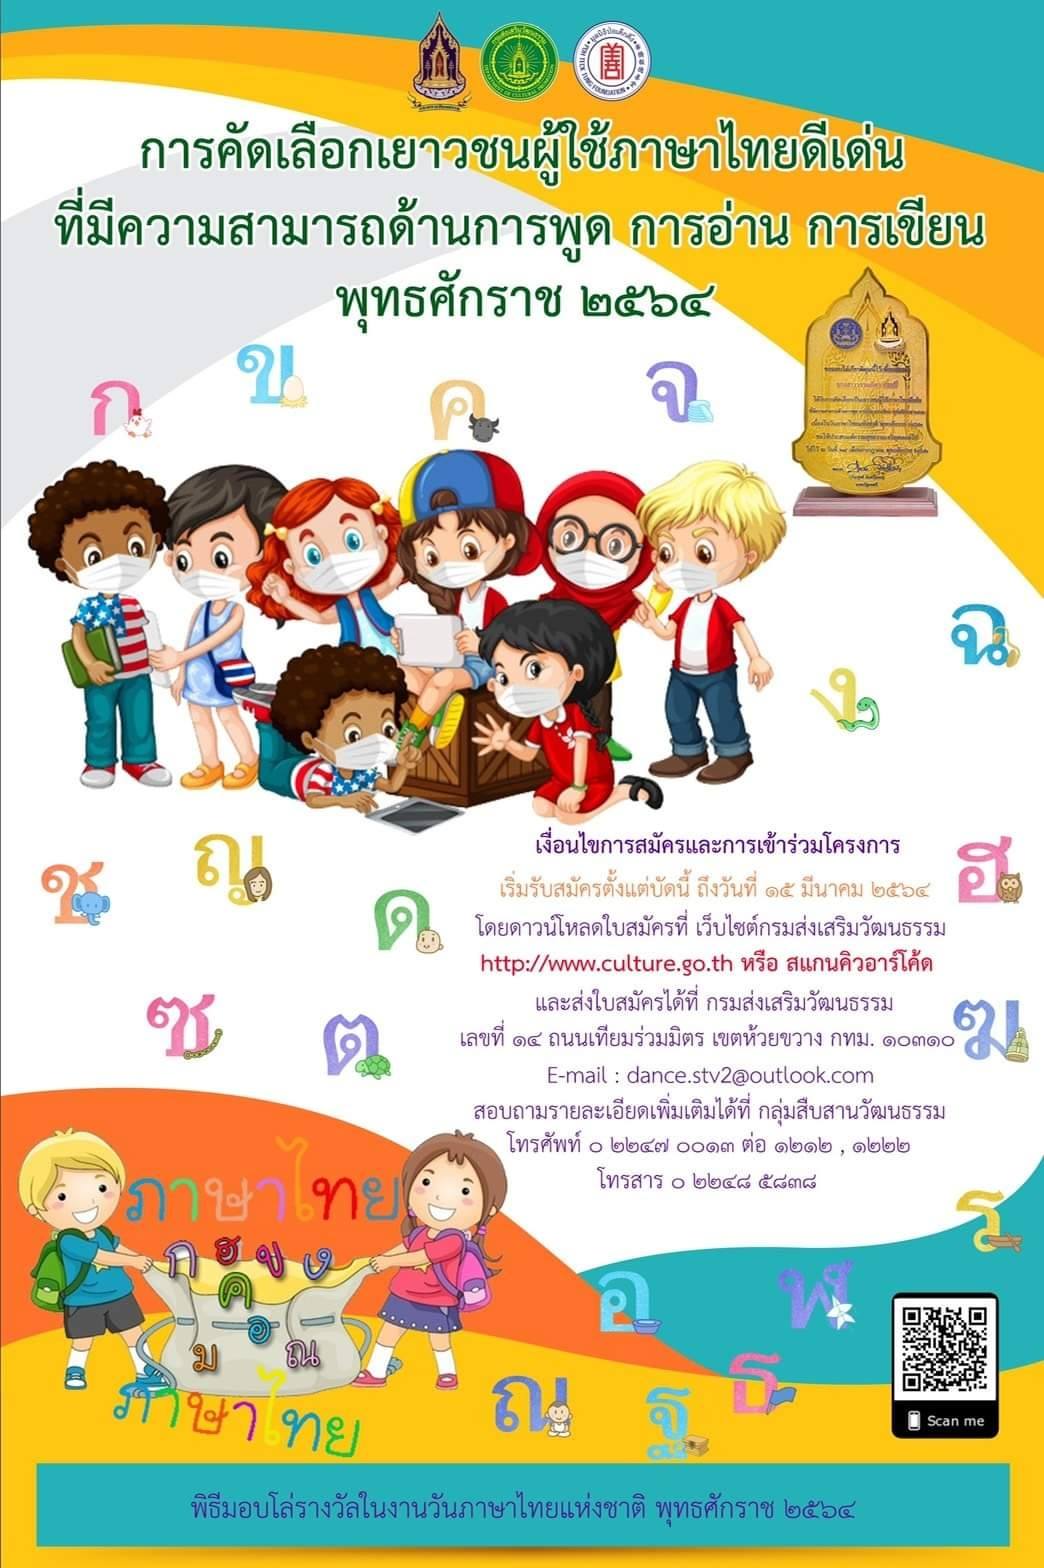 กรมส่งเสริมวัฒนธรรม รับสมัครคัดเลือกเยาวชนผู้ใช้ภาษาไทยดีเด่น ที่มีความสามารถด้านการพูด การอ่าน การเขียน พุทธศักราช ๒๕๖๔ ส่งผลงานภาย ๑๕ มีนาคม ๒๕๖๔